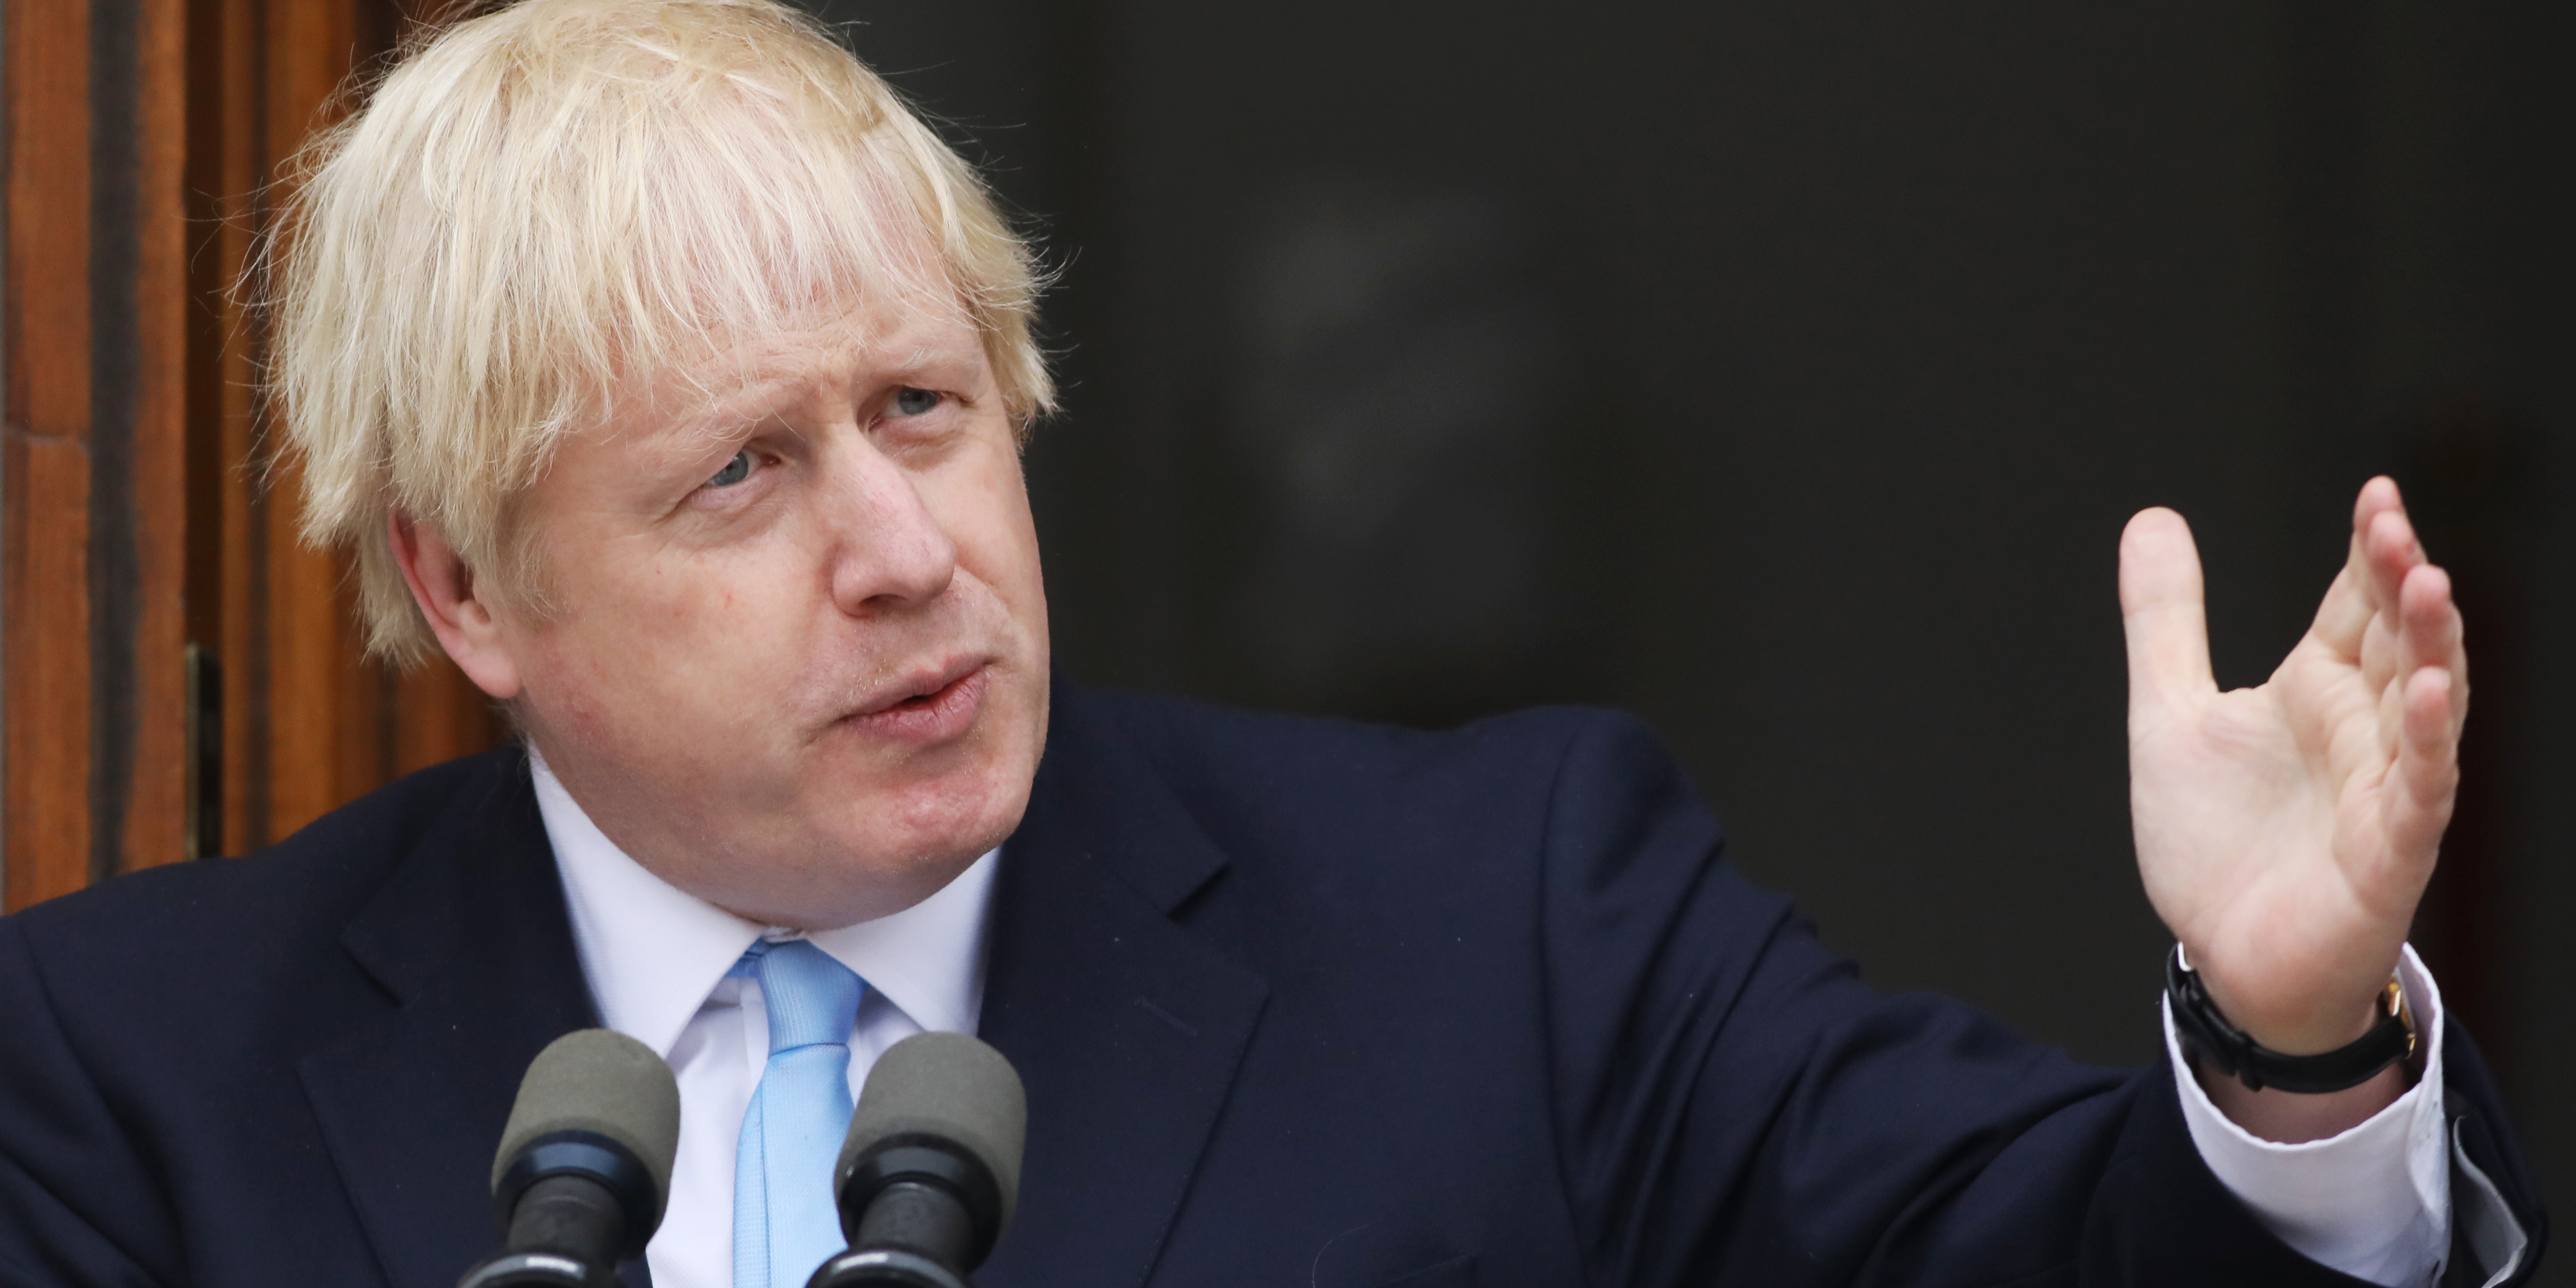 ‘Ní throidfinn toghchán ar an mBreatimeacht gan mhargadh’ – Boris Johnson